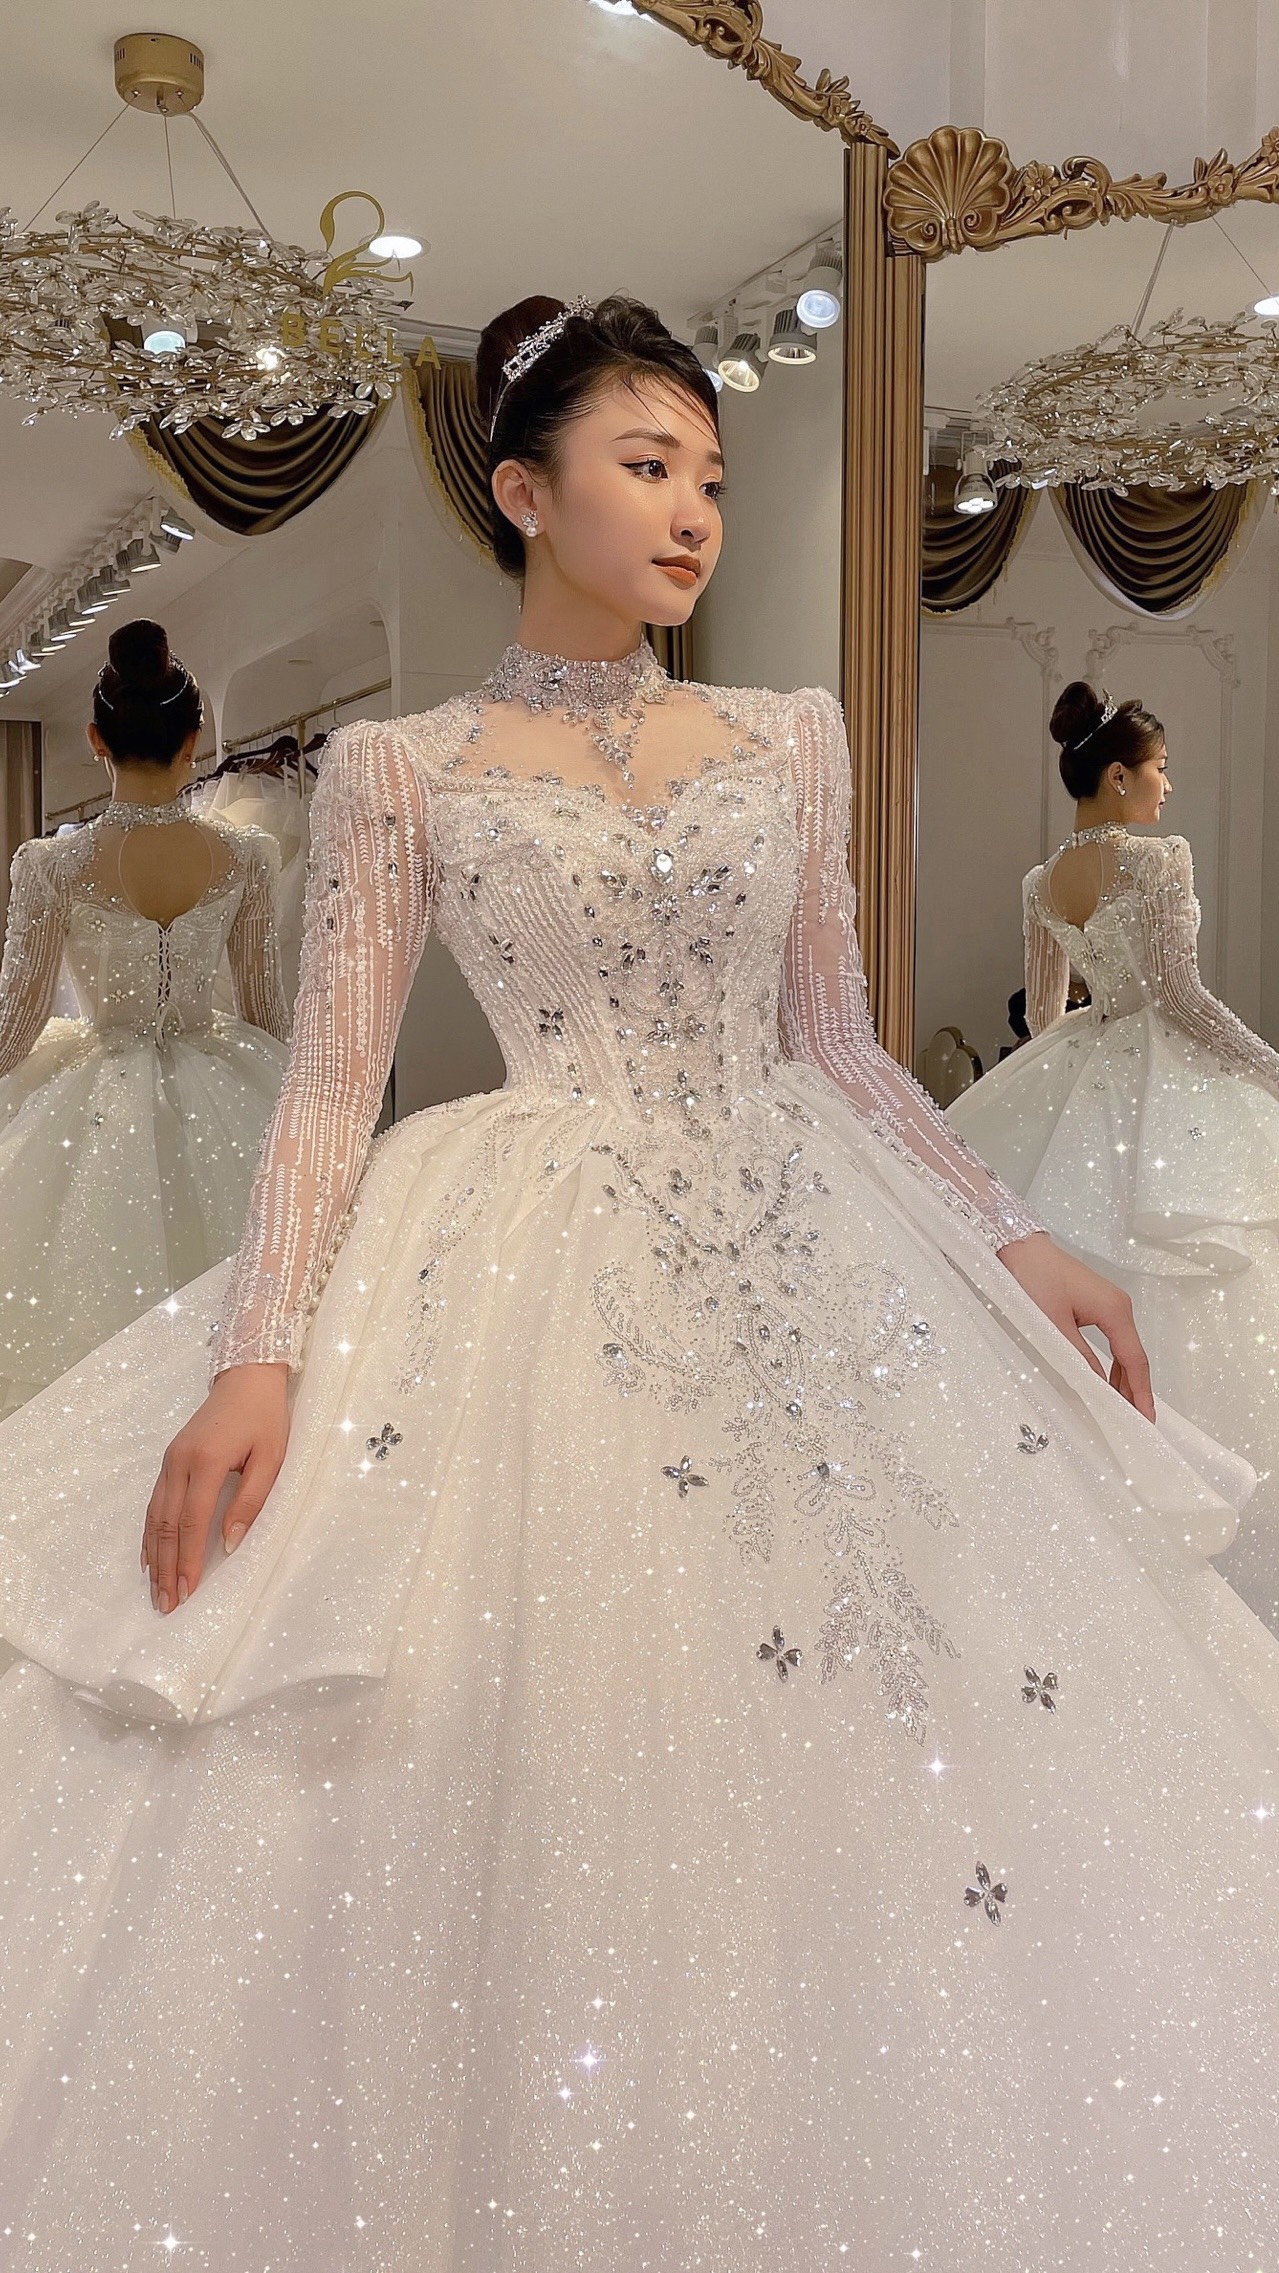 Váy cưới làm lễ Luxury  LLX03  KIM COUTURETHƯƠNG HIỆU VÁY CƯỚI THIẾT KẾ  NỔI TIẾNG TẠI VIỆT NAM